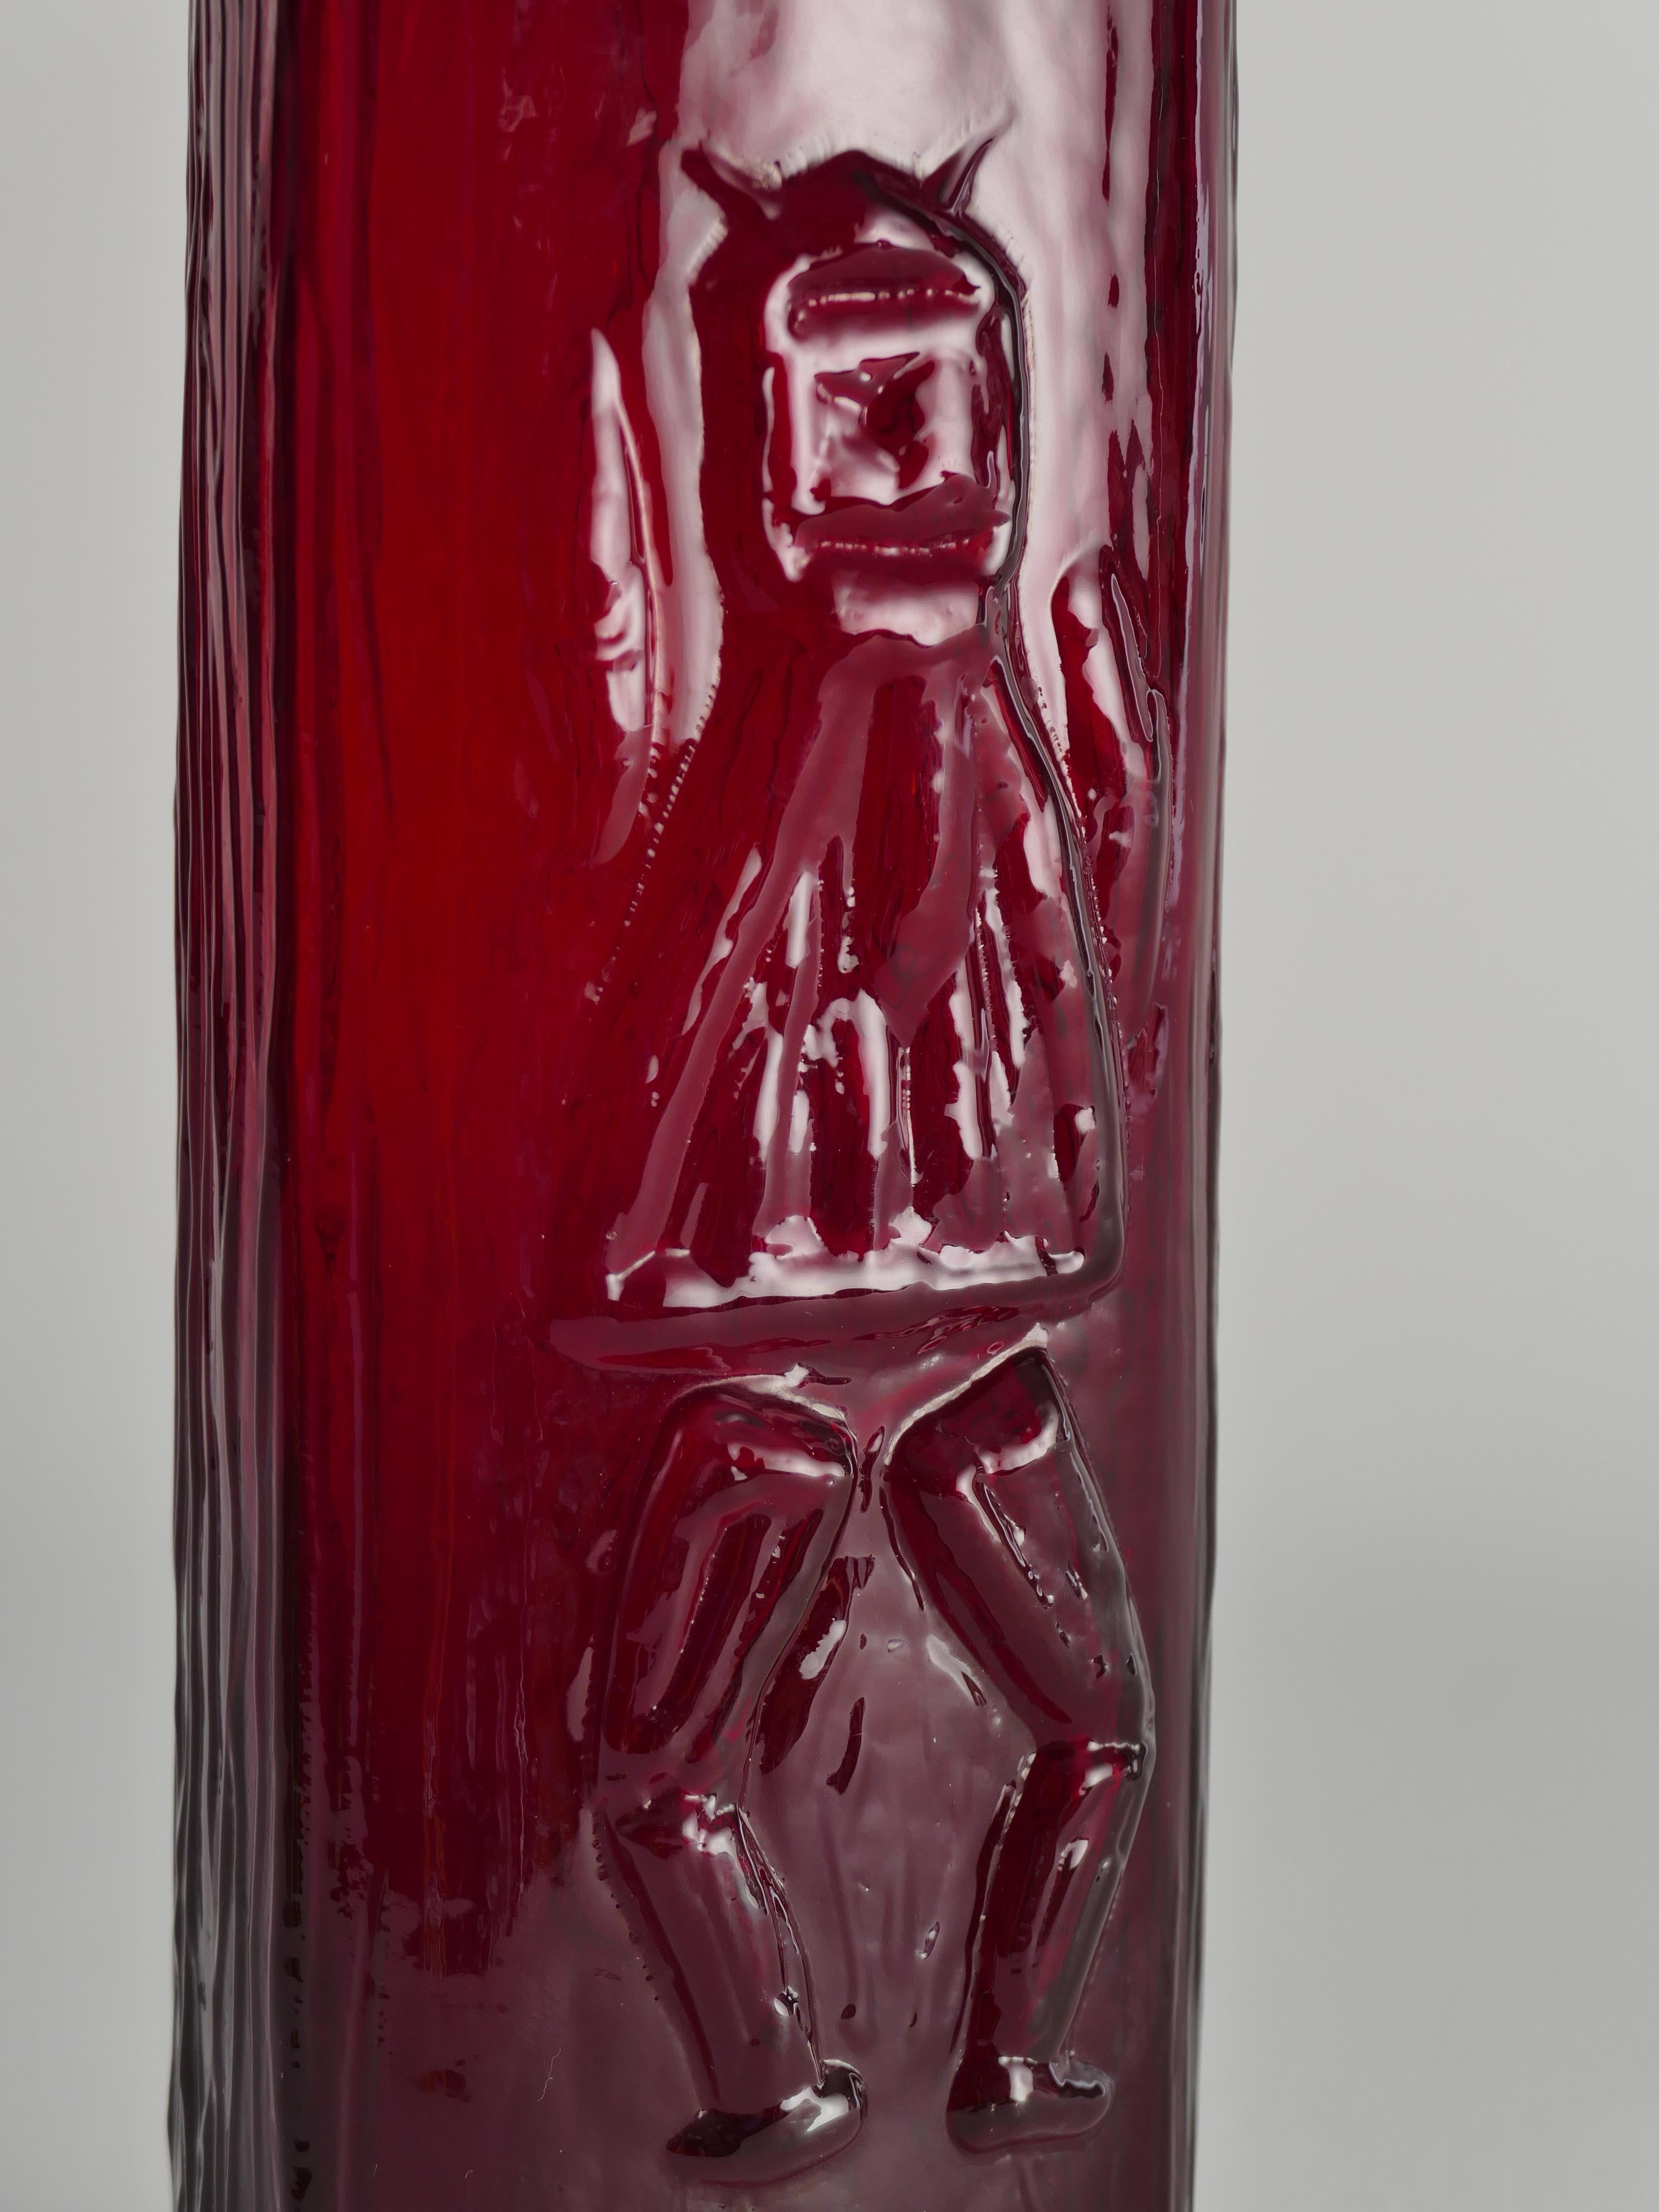 Formgeblasene skandinavisch-moderne rote dreieckige Teufelsglasvase von Christer Sjögren für Lindshammar 1960er Jahre. Er entwickelte eine spezielle Technik, bei der das Glas in einem Hohlraum aus Ziegelsteinen aufgeblasen wird.  
Die bestechend